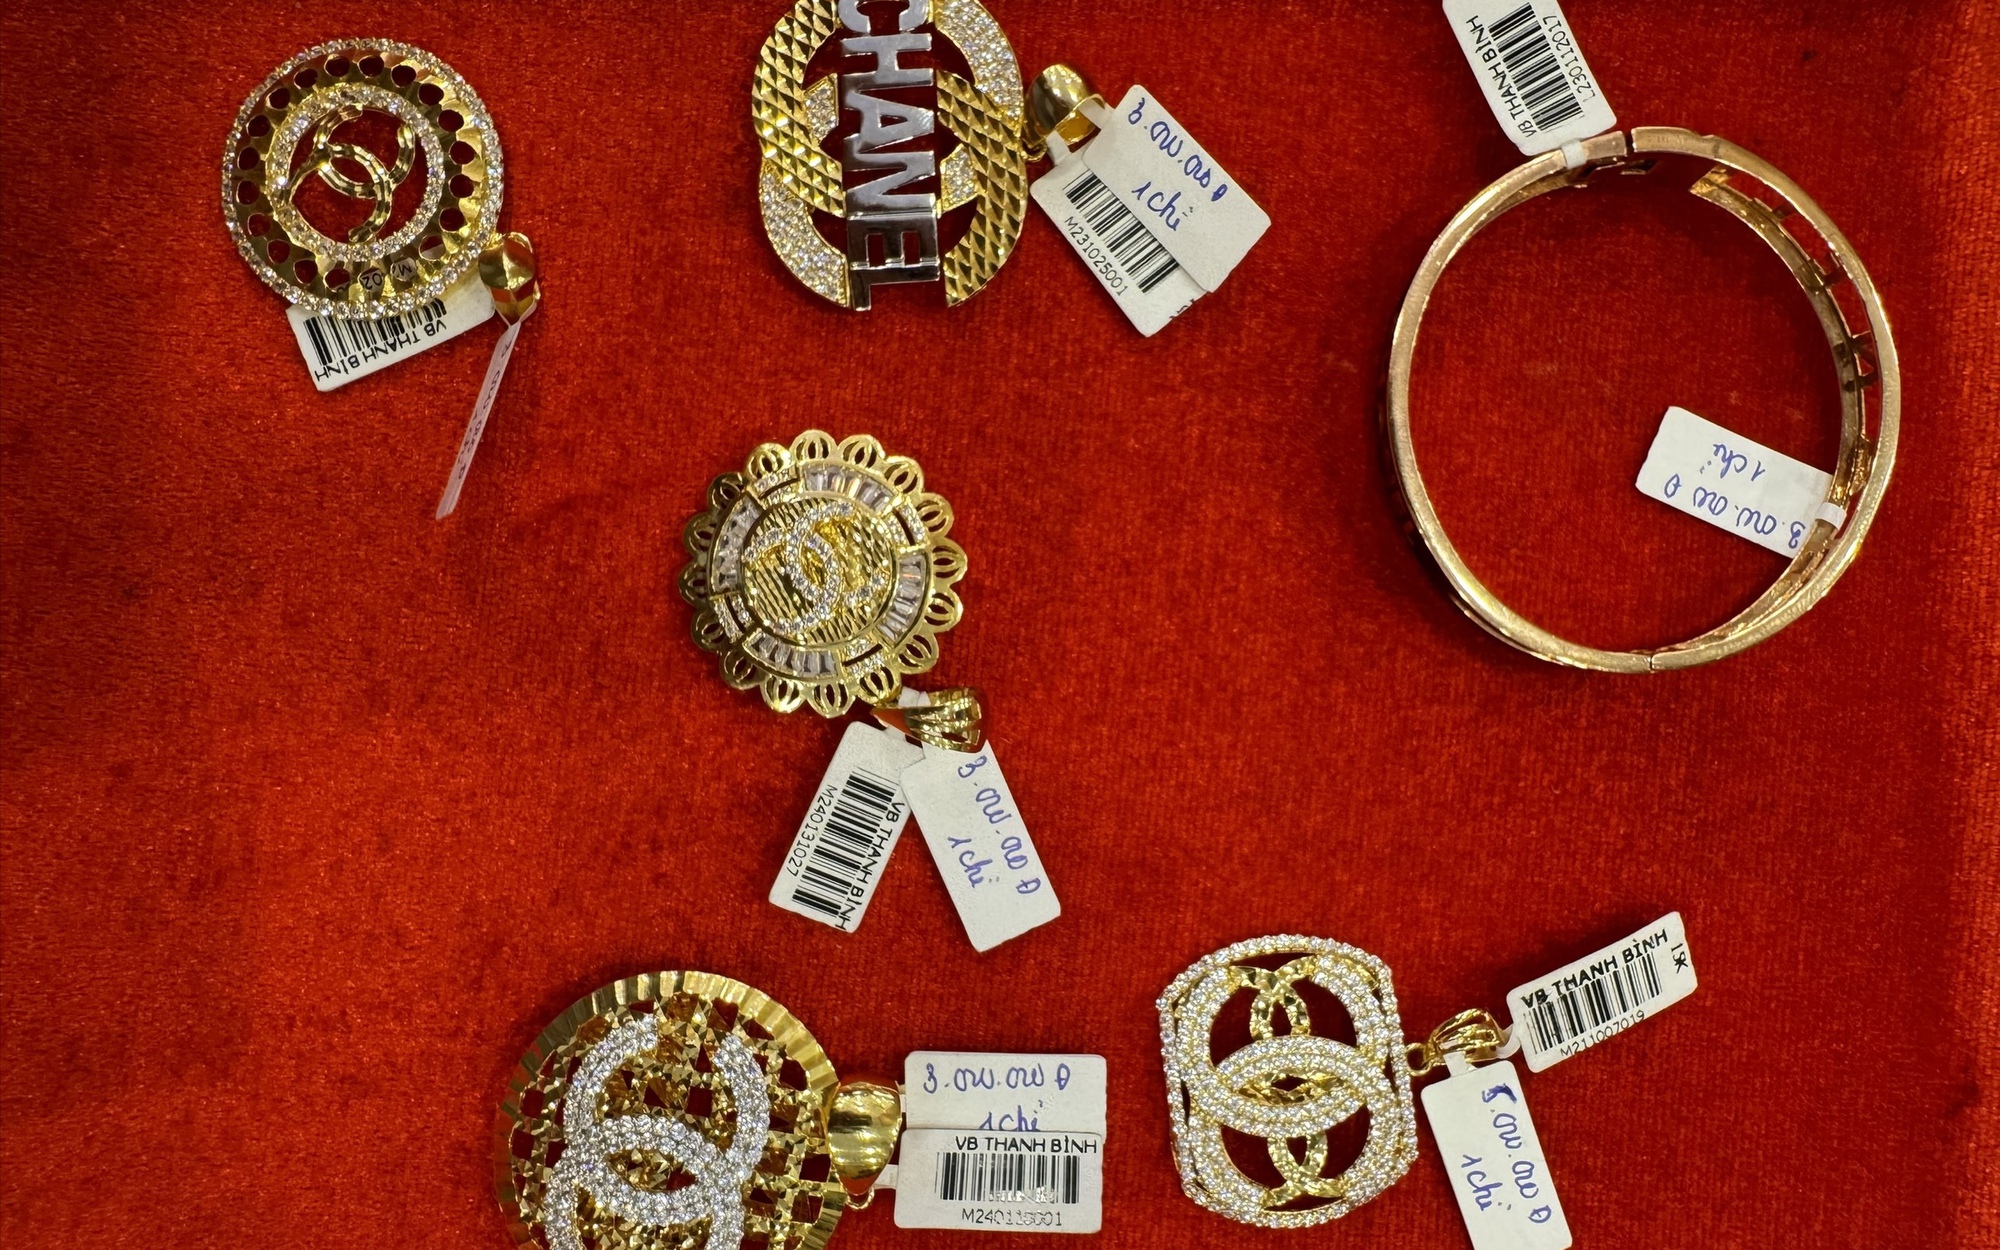 Phát hiện nhiều sản phẩm trang sức giống vàng giả mạo các nhãn hiệu nổi tiếng